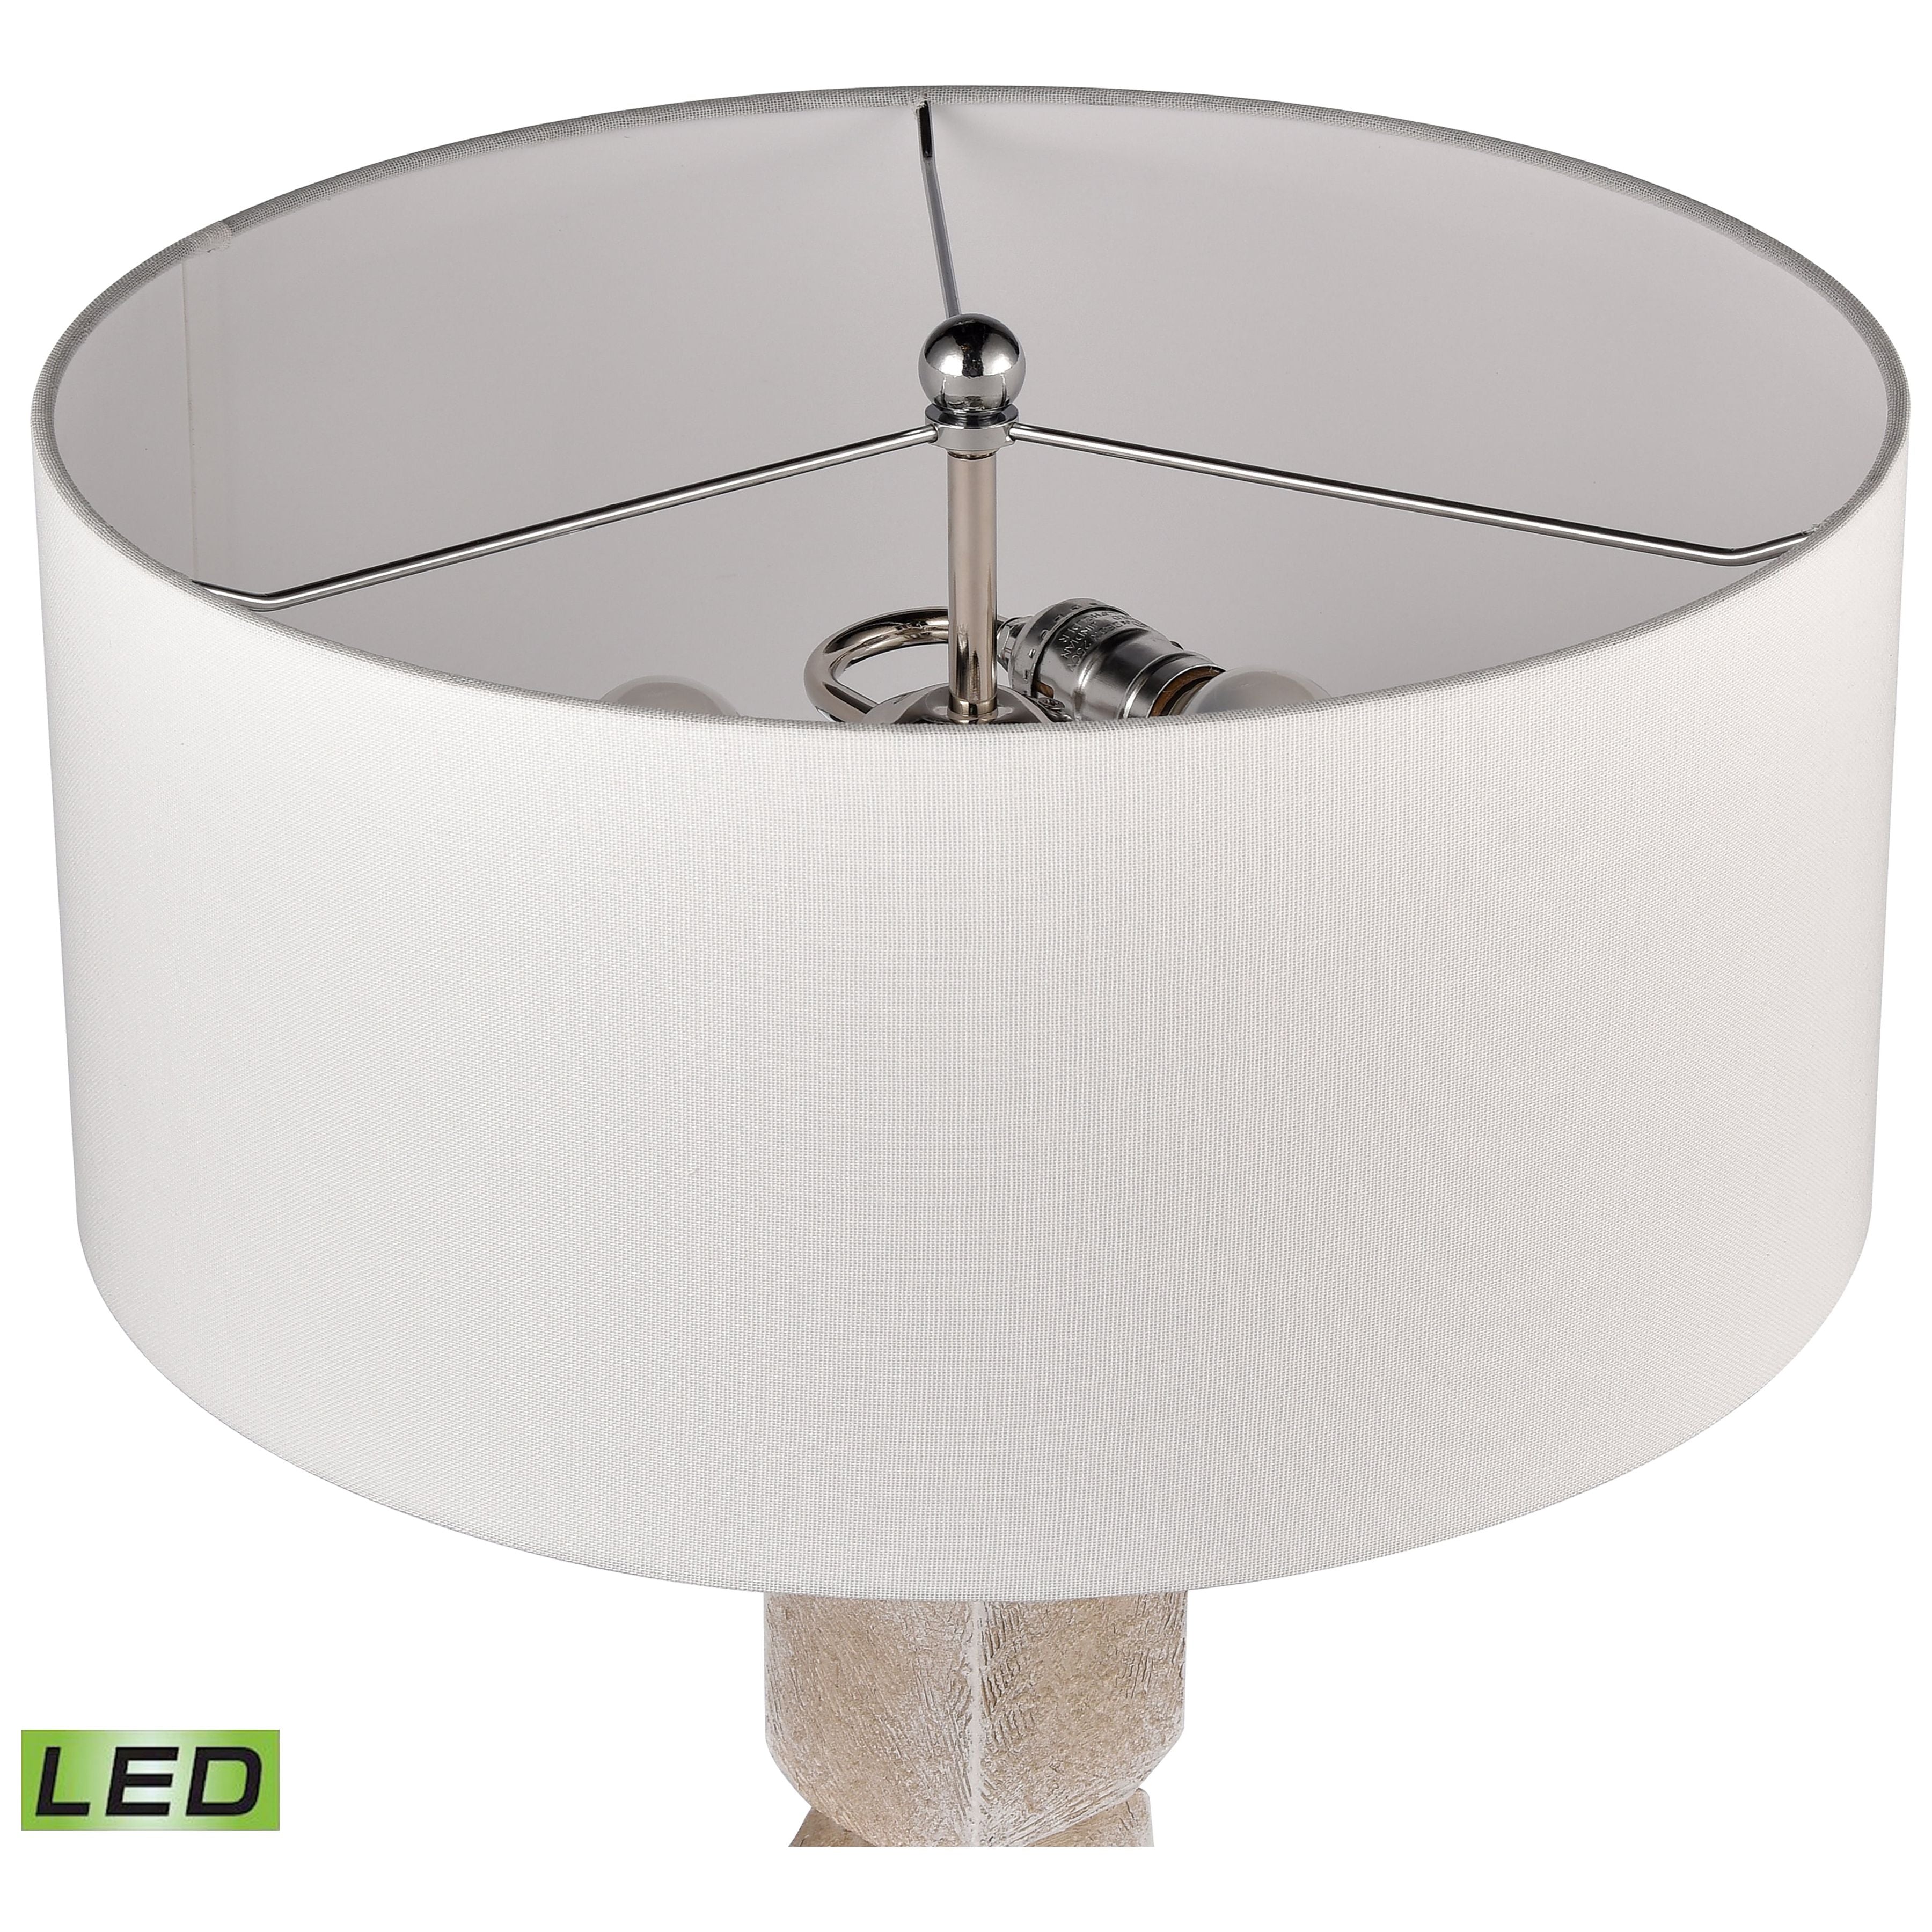 Burne 26.5" High 2-Light Table Lamp